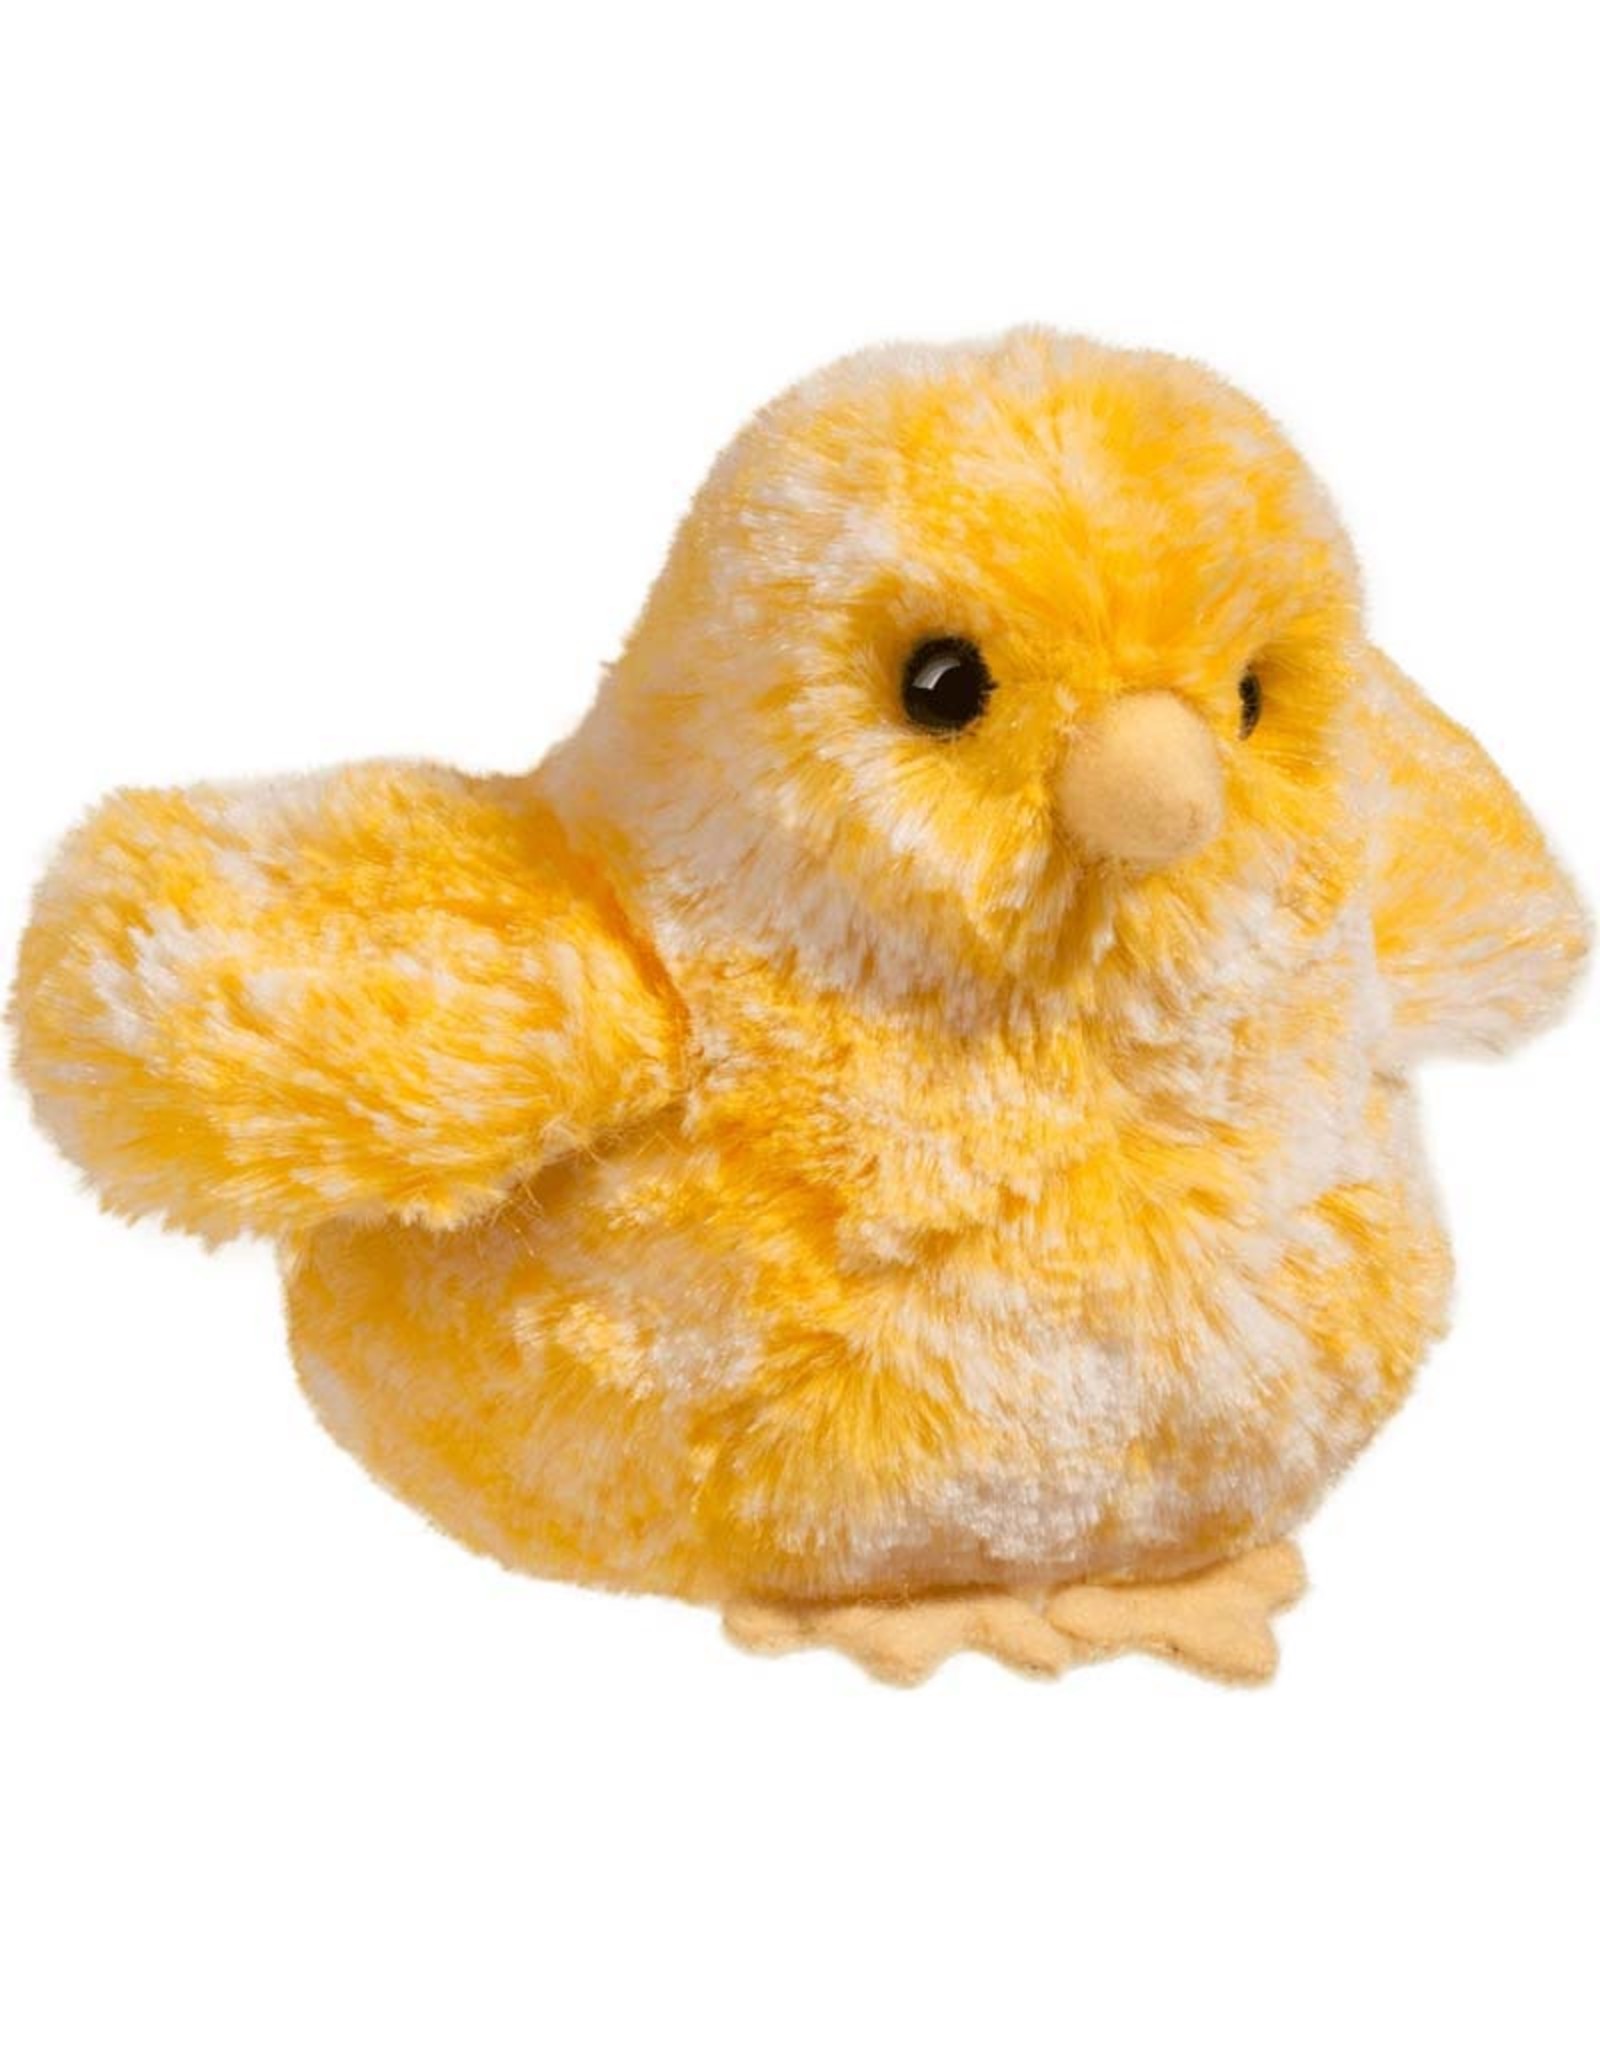 Douglas Multi Chick Yellow